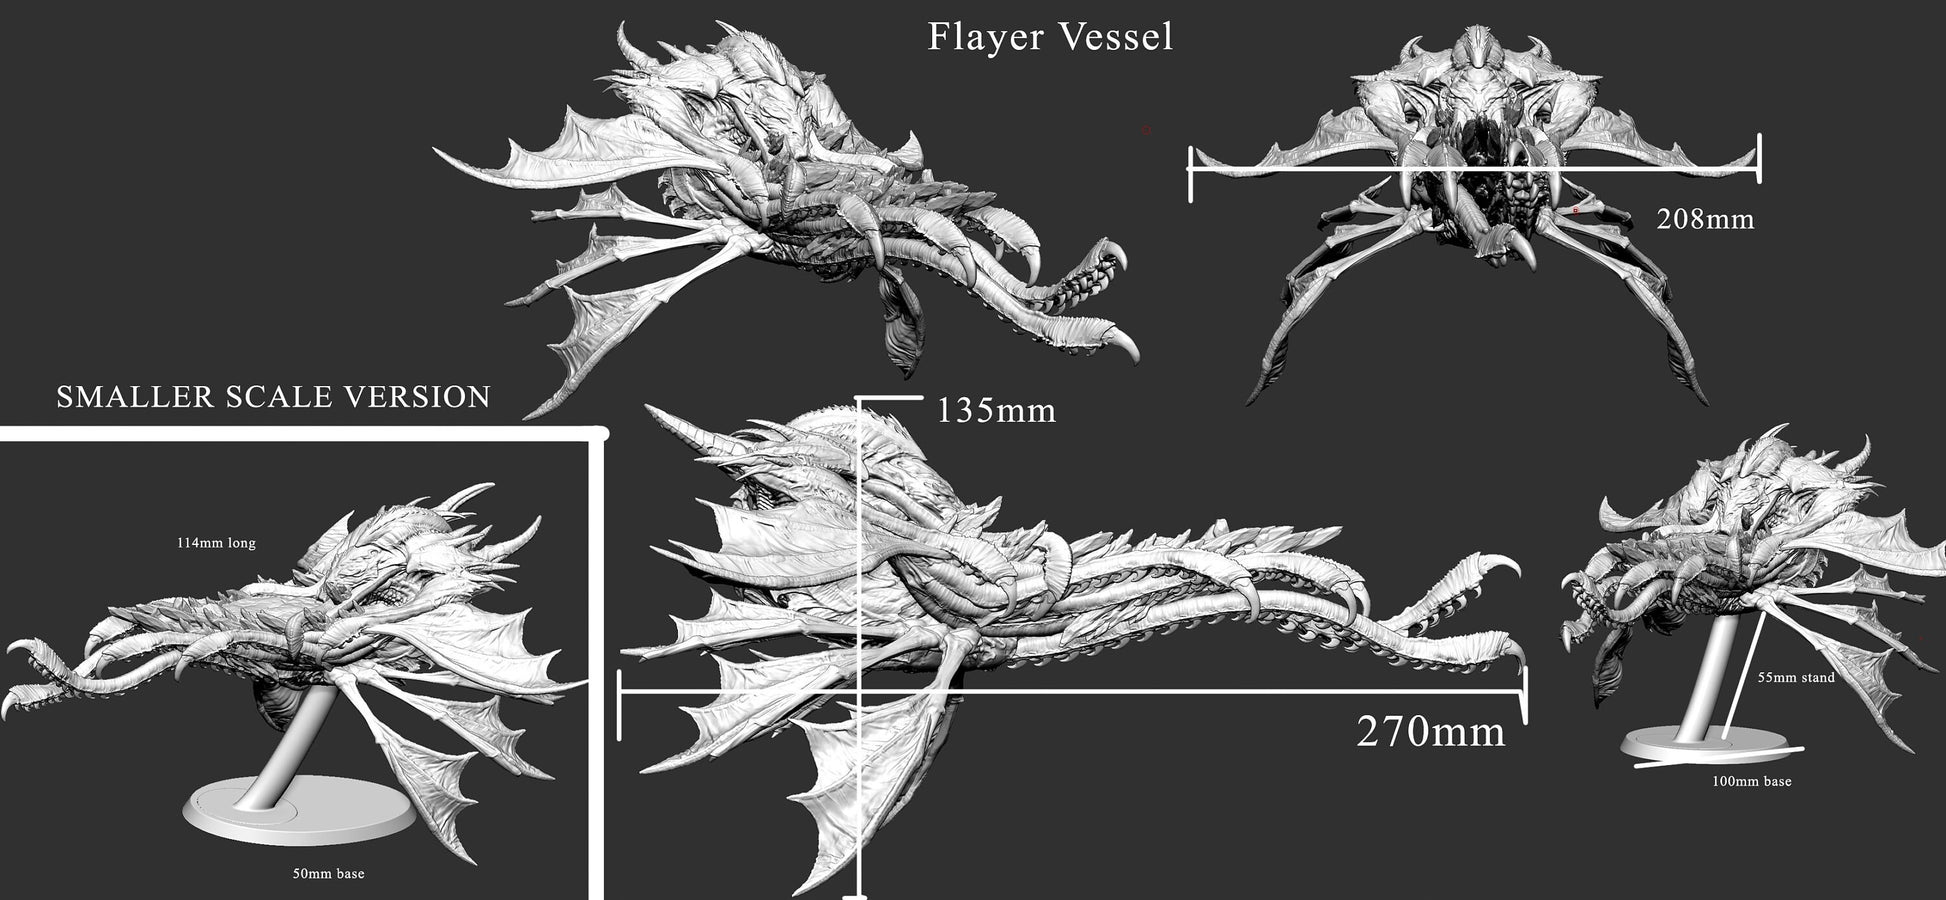 Flayer Vessel by Mini Monster Mayhem | Please Read Description